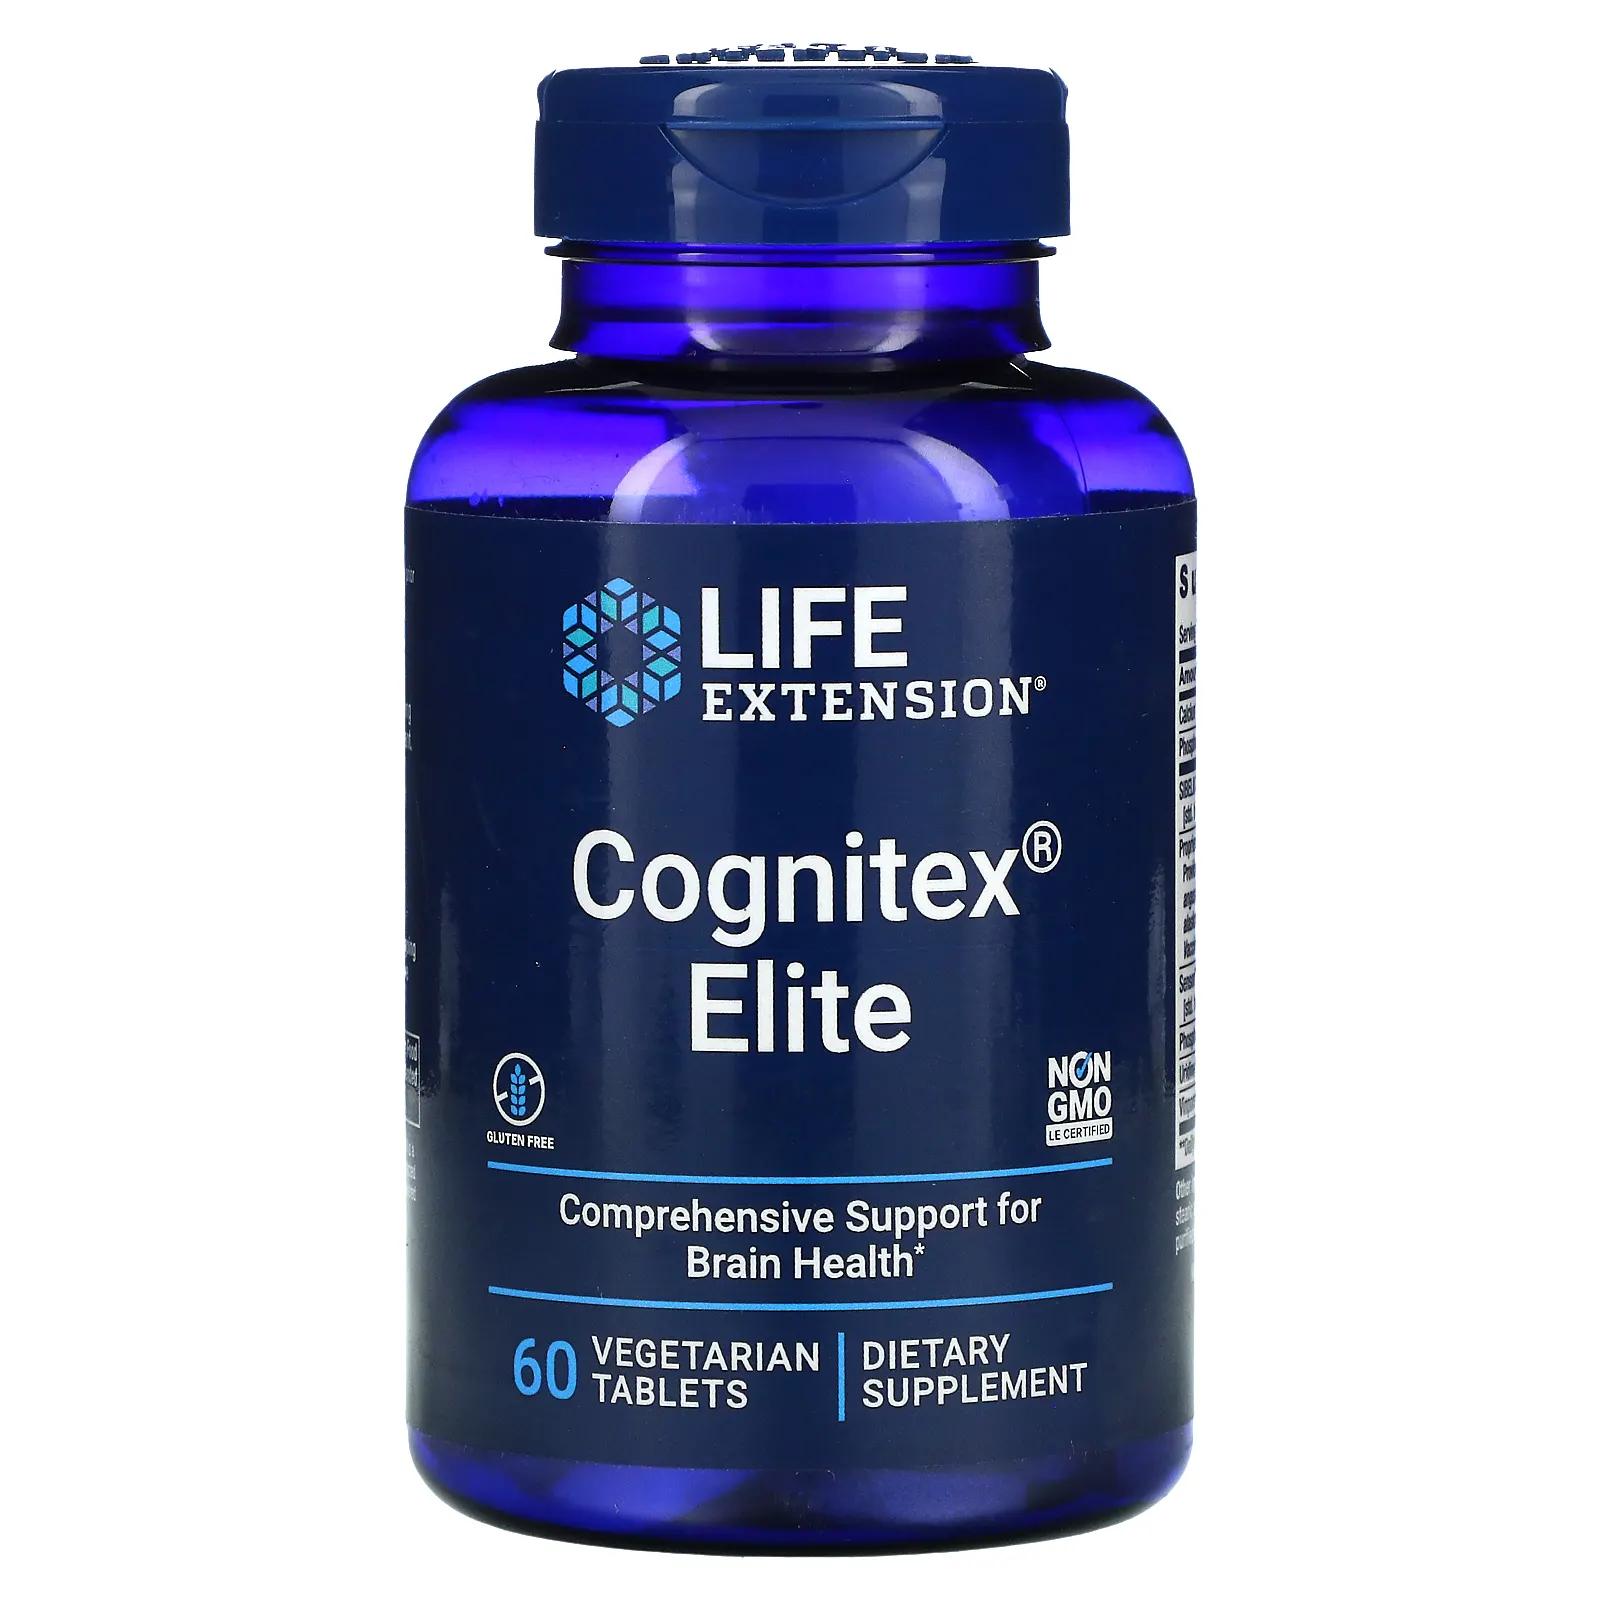 Life Extension Cognitex Elite 60 таблеток life extension прегненолон elite cognitex 60 вегетарианских таблеток